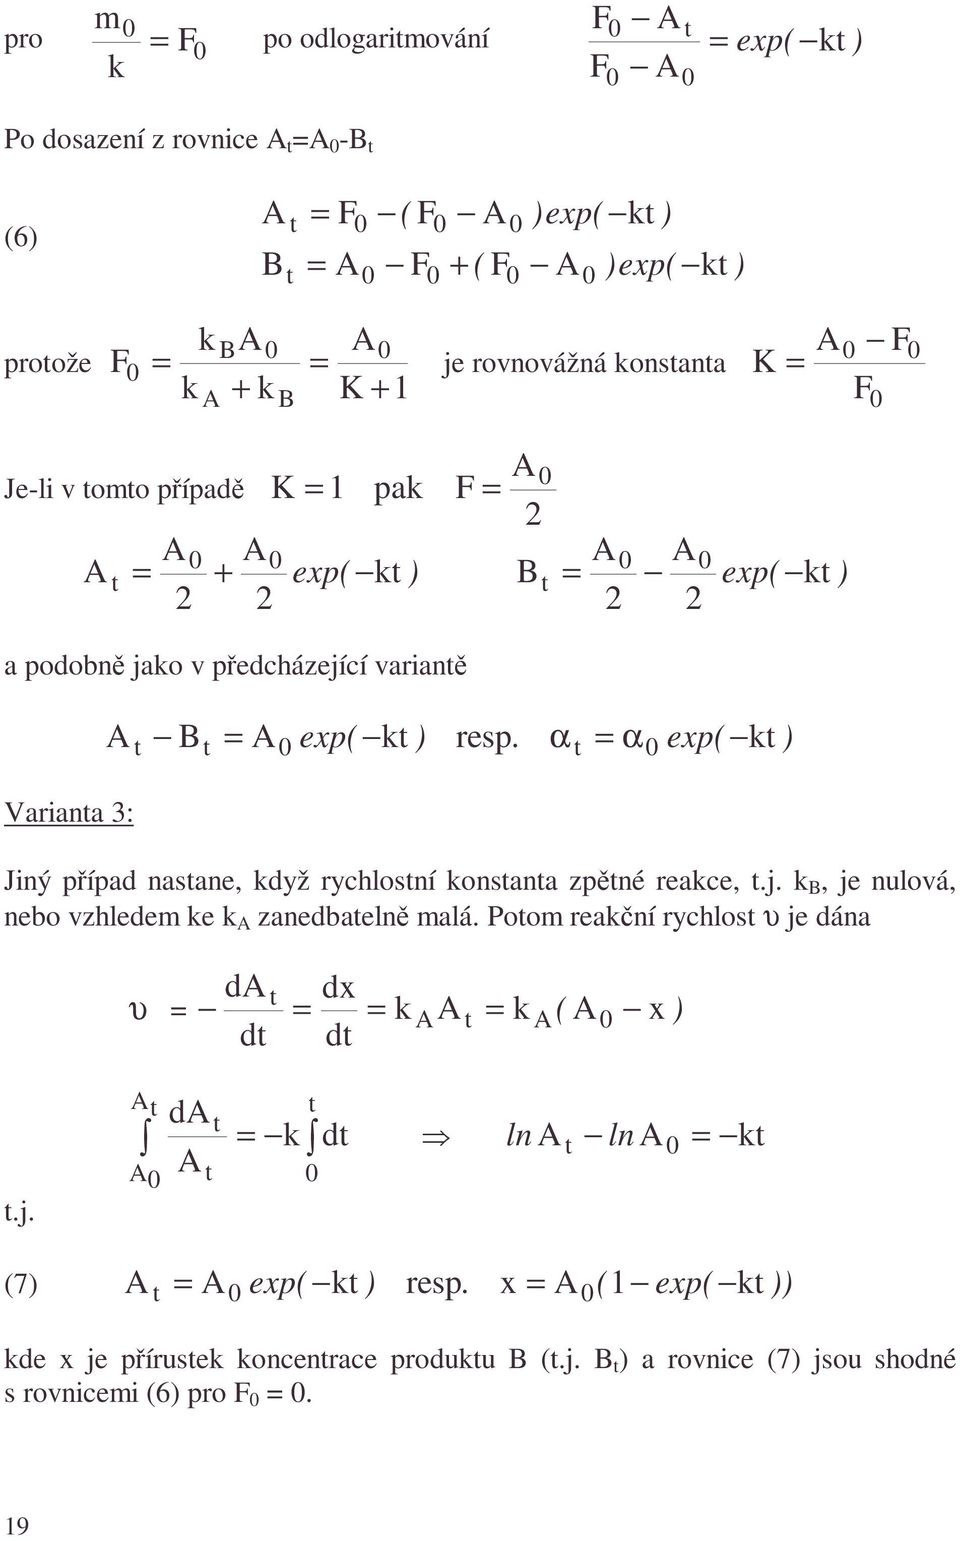 α α exp( k ) Variana 3: Jiný případ nasane, když rychlosní konsana zpěné reakce,.j. k, je nulová, nebo vzhledem ke k zanedbaelně malá.